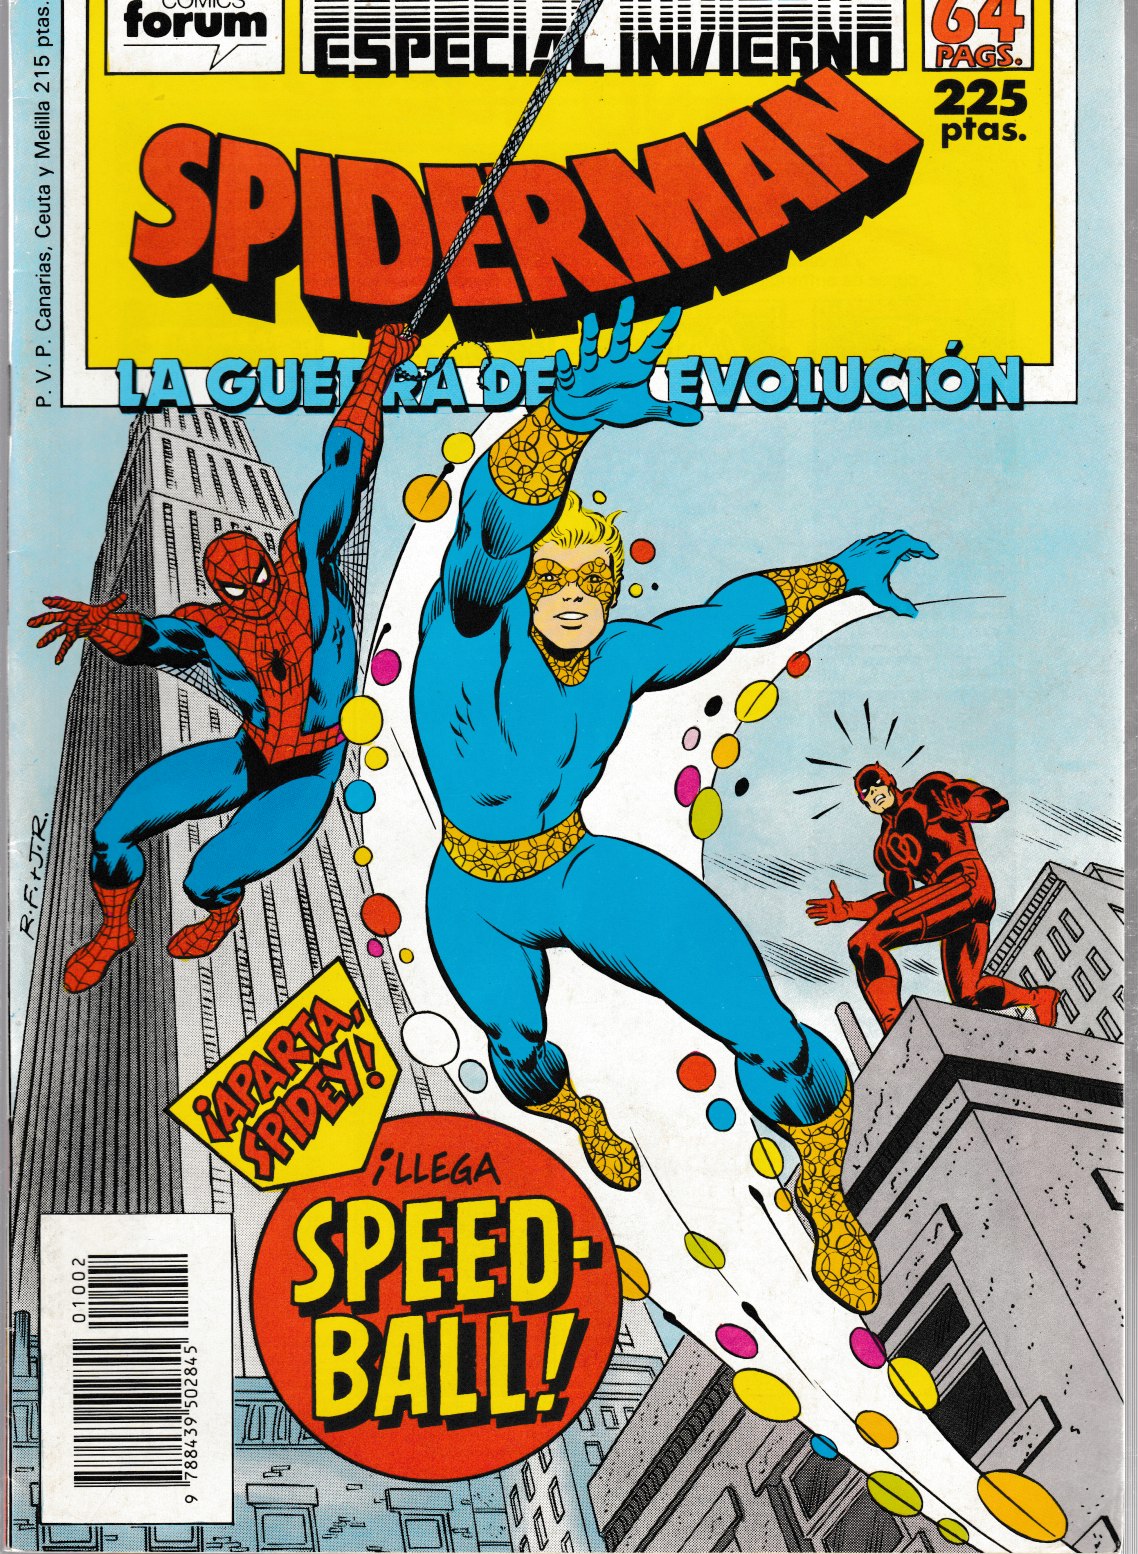 Spiderman. Forum 1983. Extra 7 (Especial Invierno 1988)